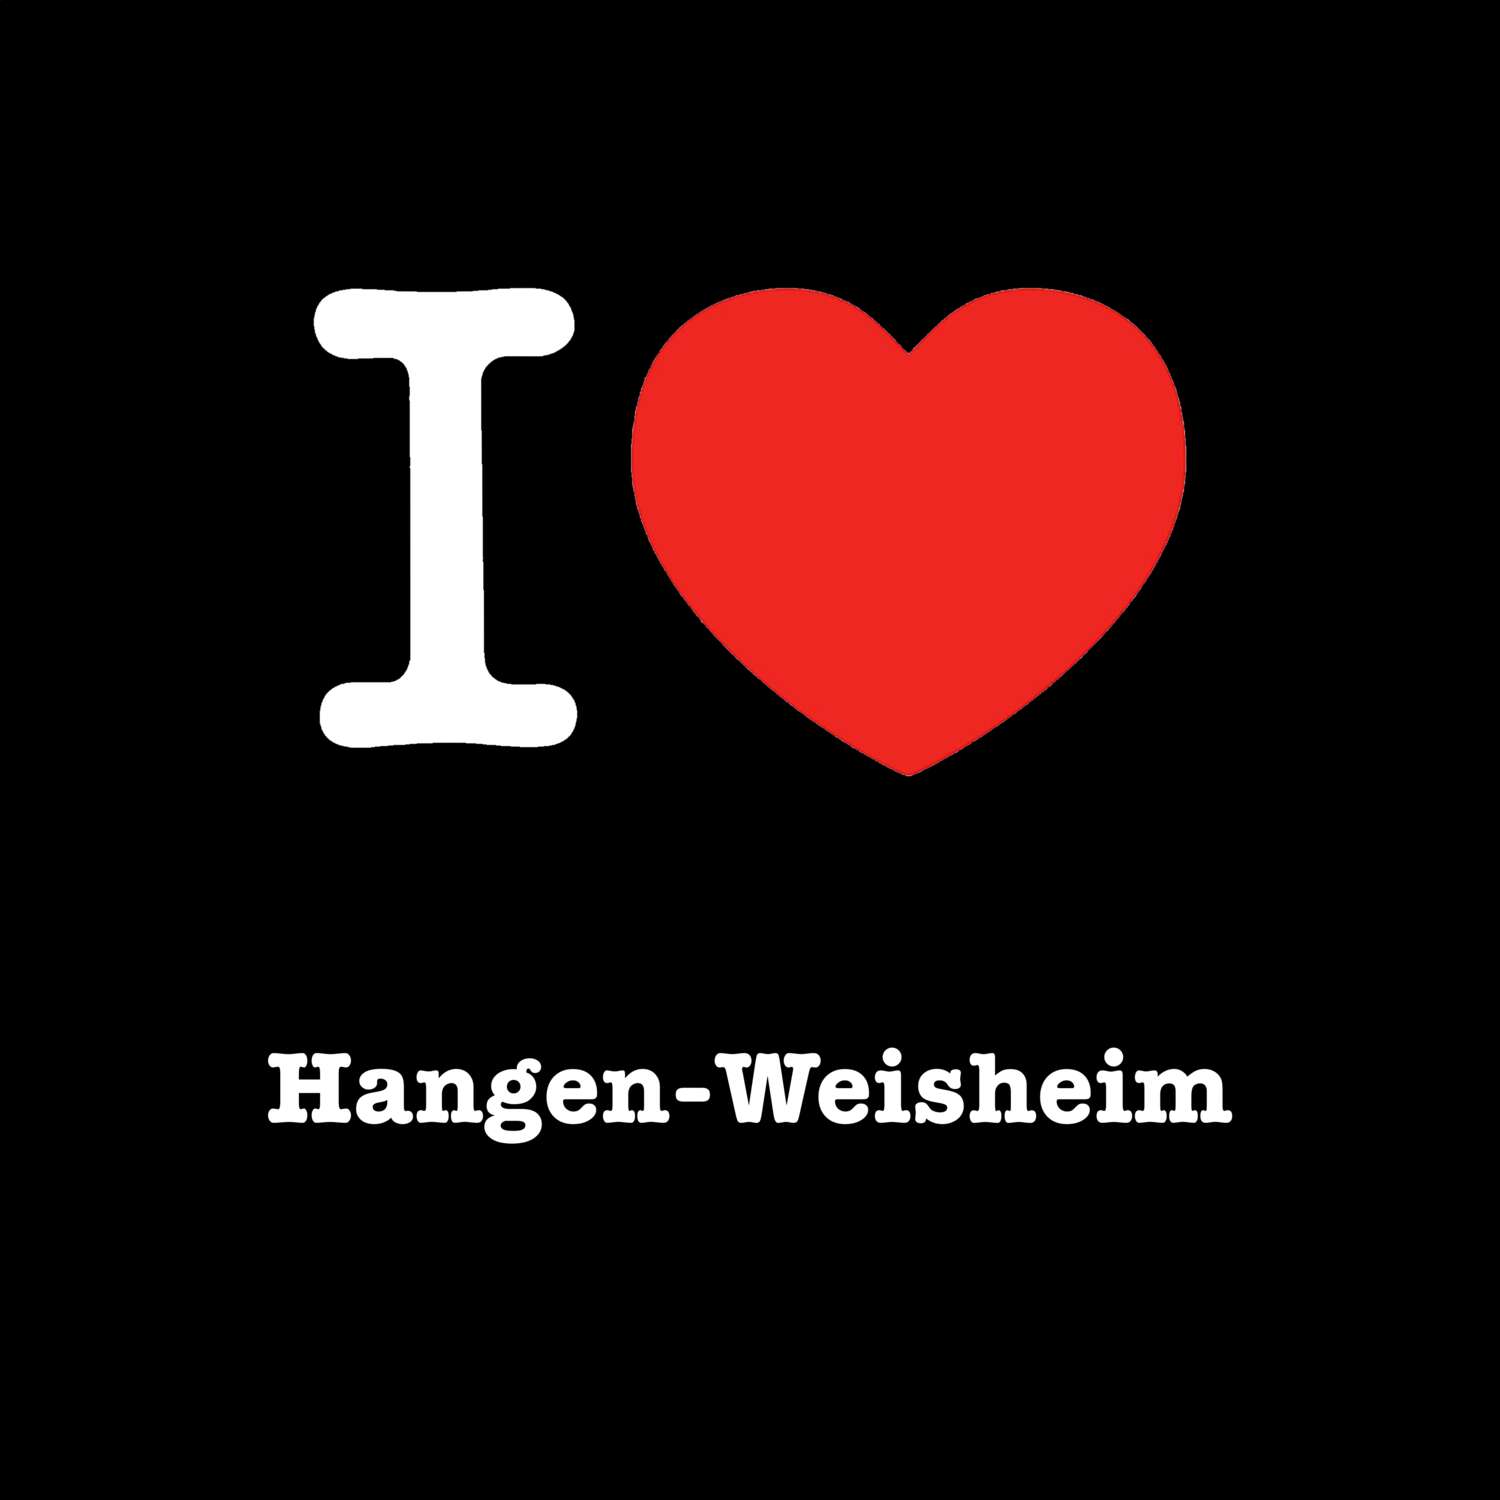 Hangen-Weisheim T-Shirt »I love«